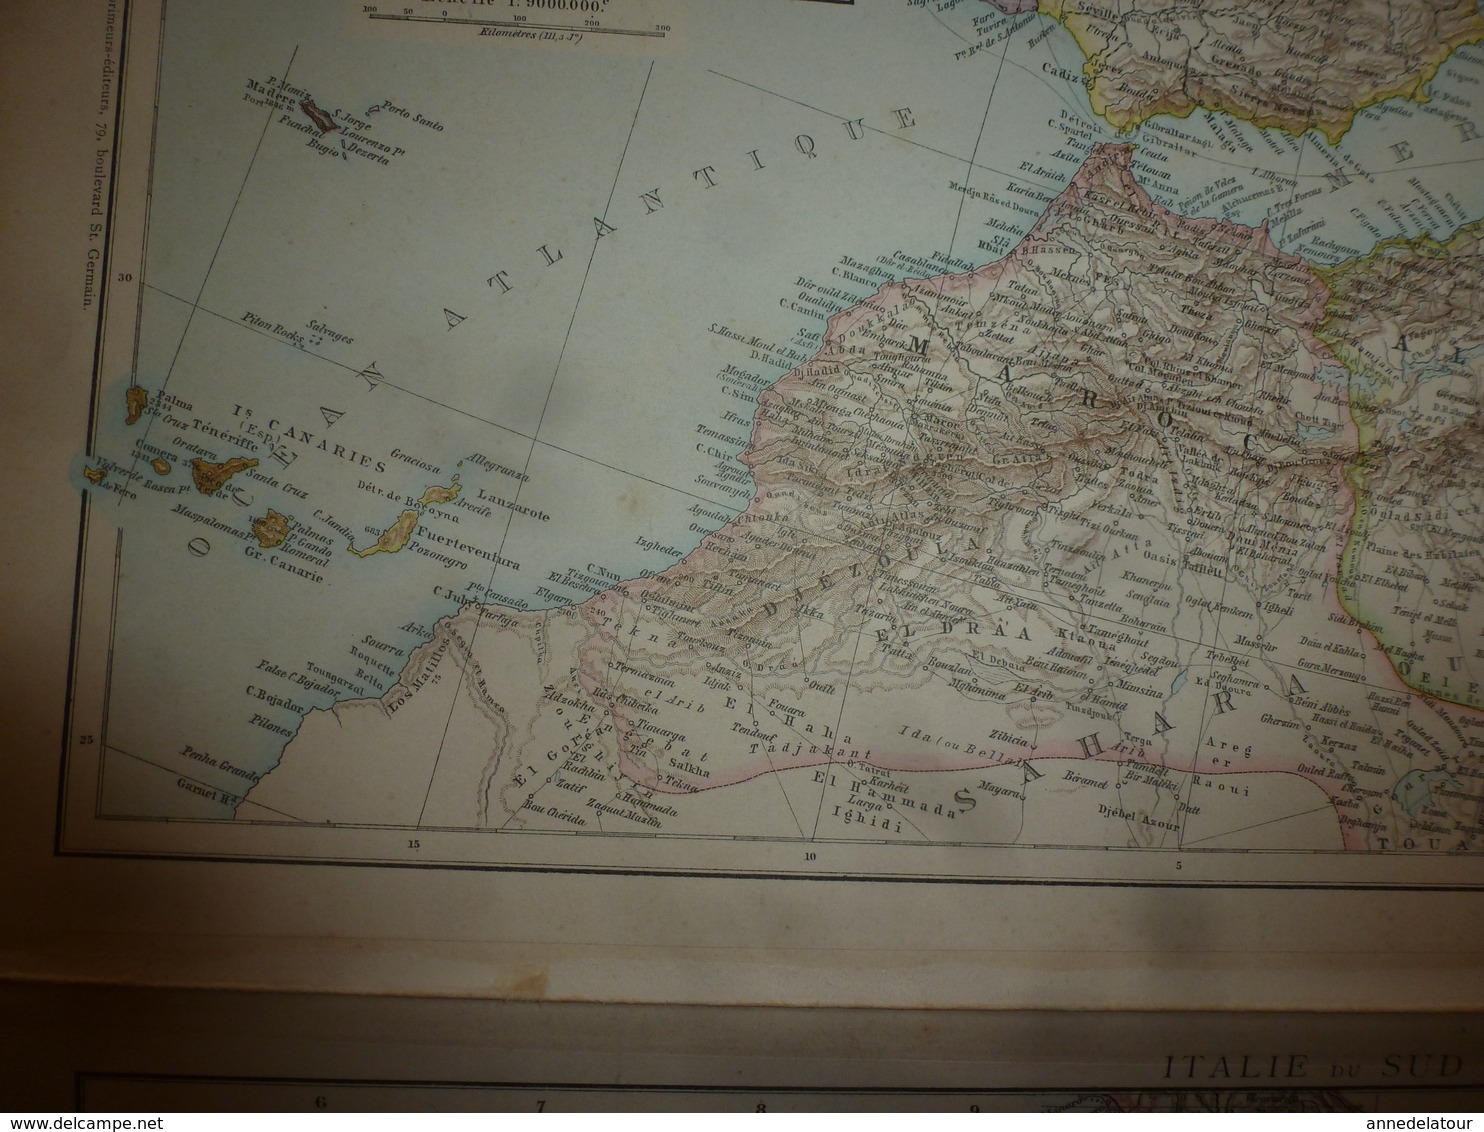 1884 Carte Géographique :Recto (Espagne et Portugal) ; Verso (Méditerranée occidentale) et (Itale du Sud) etc